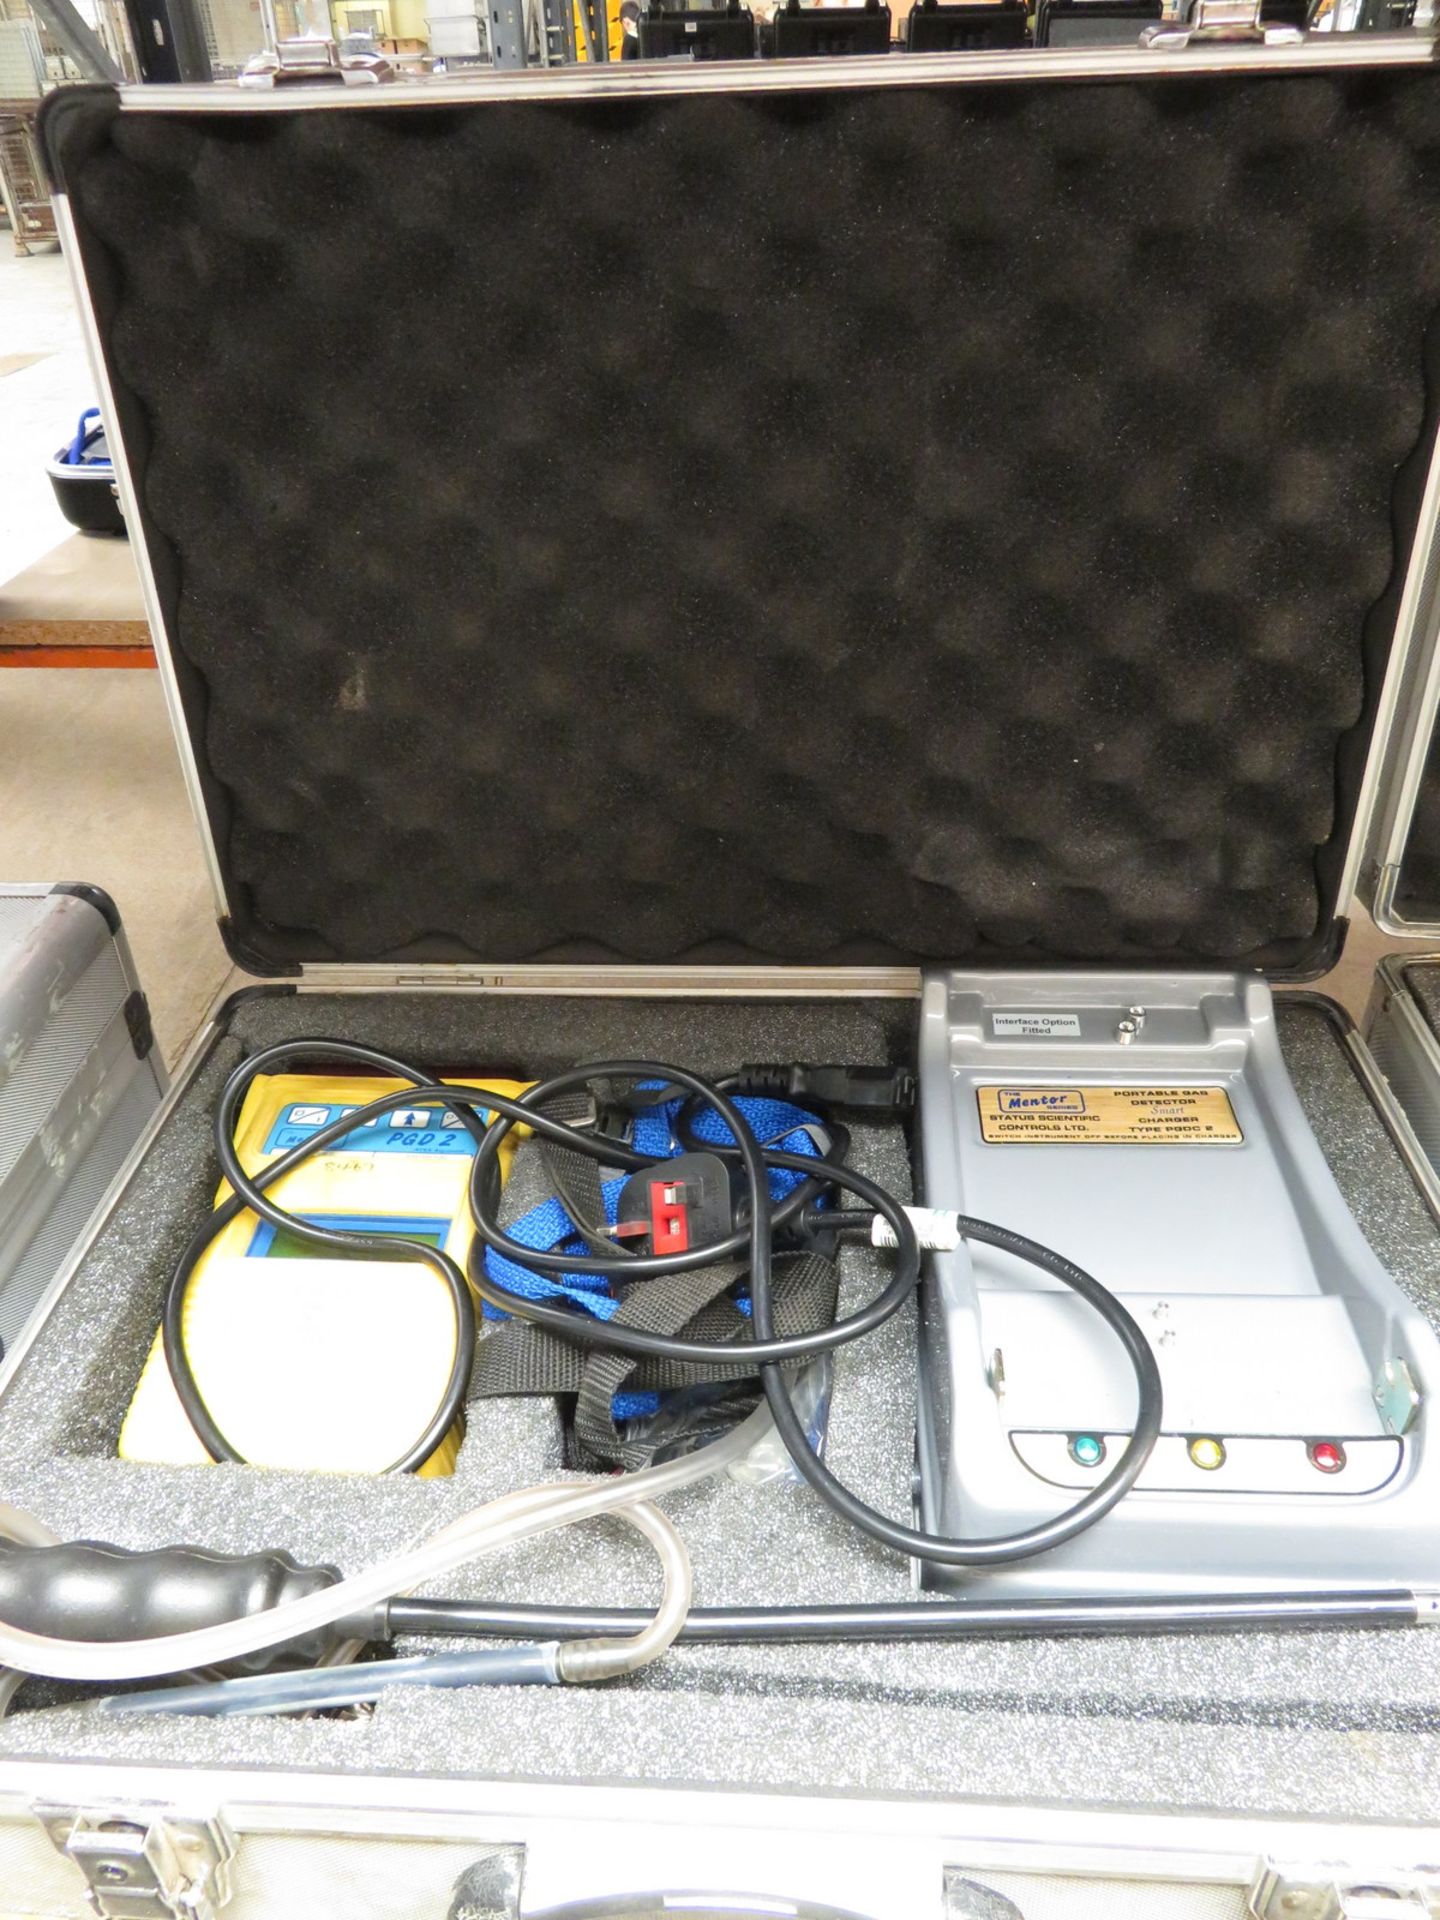 Status Scientific PGD2 portable gas detector set